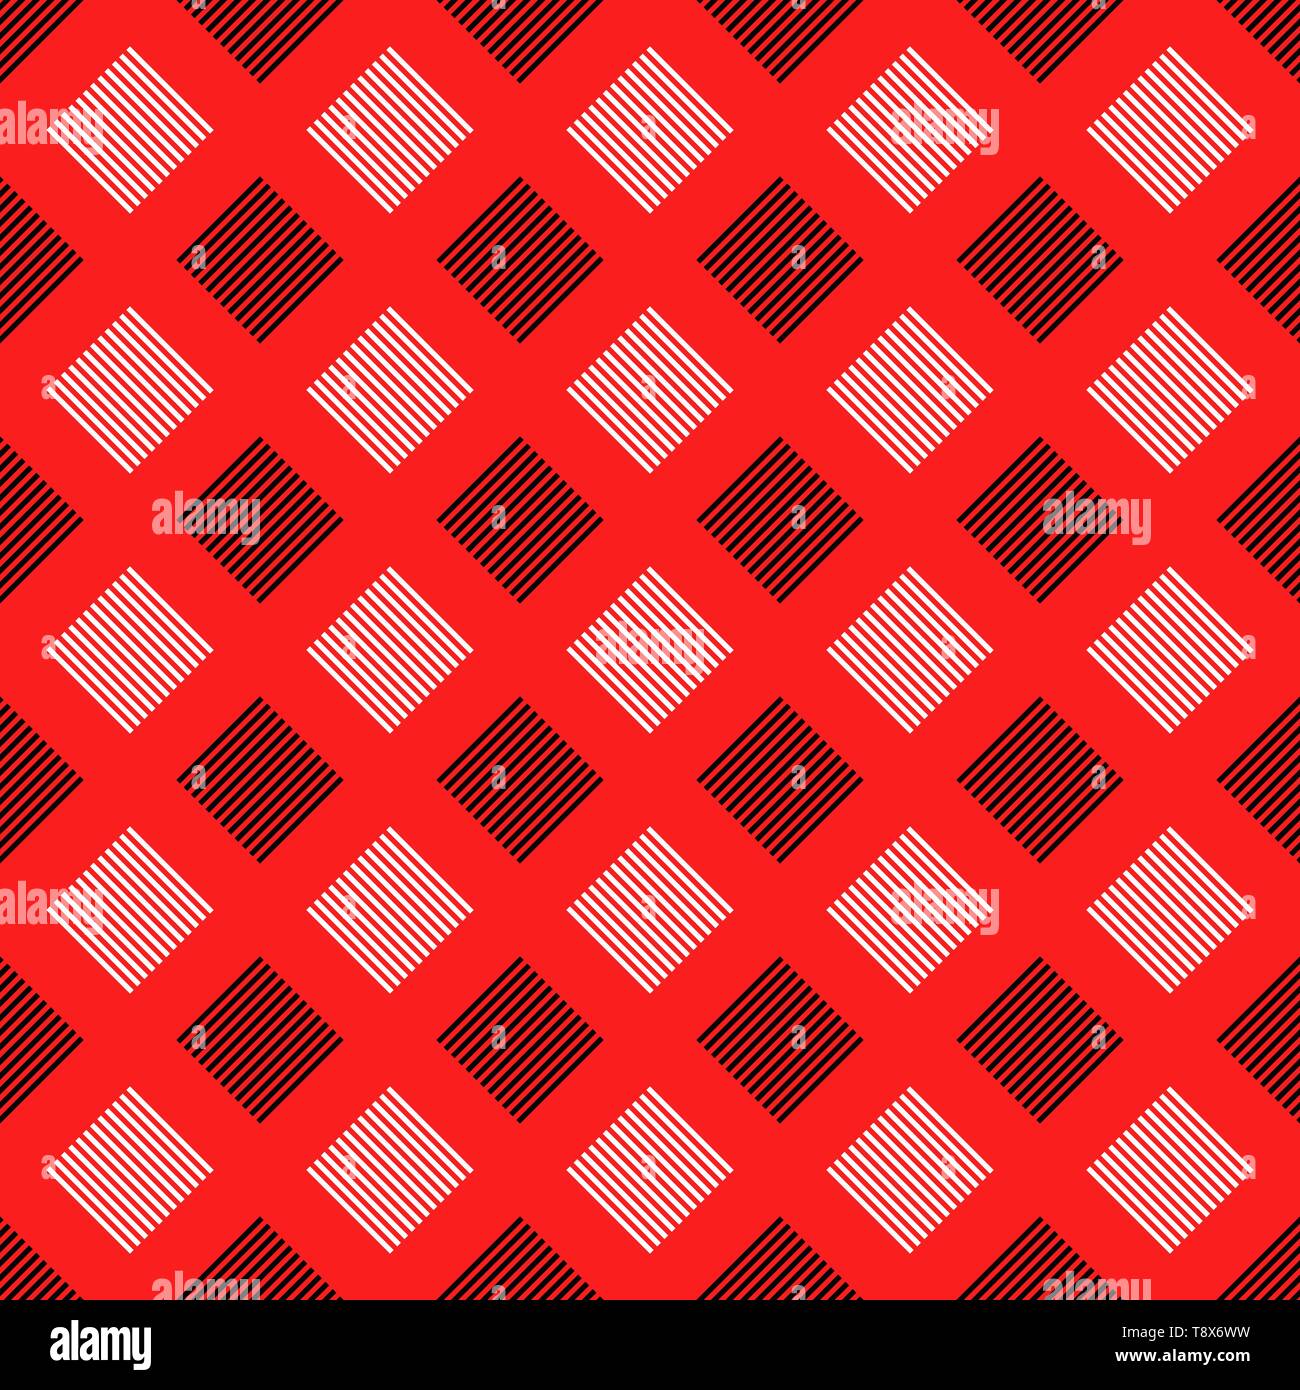 Zusammenfassung nahtlose quadratischen Muster Hintergrund Stock Vektor